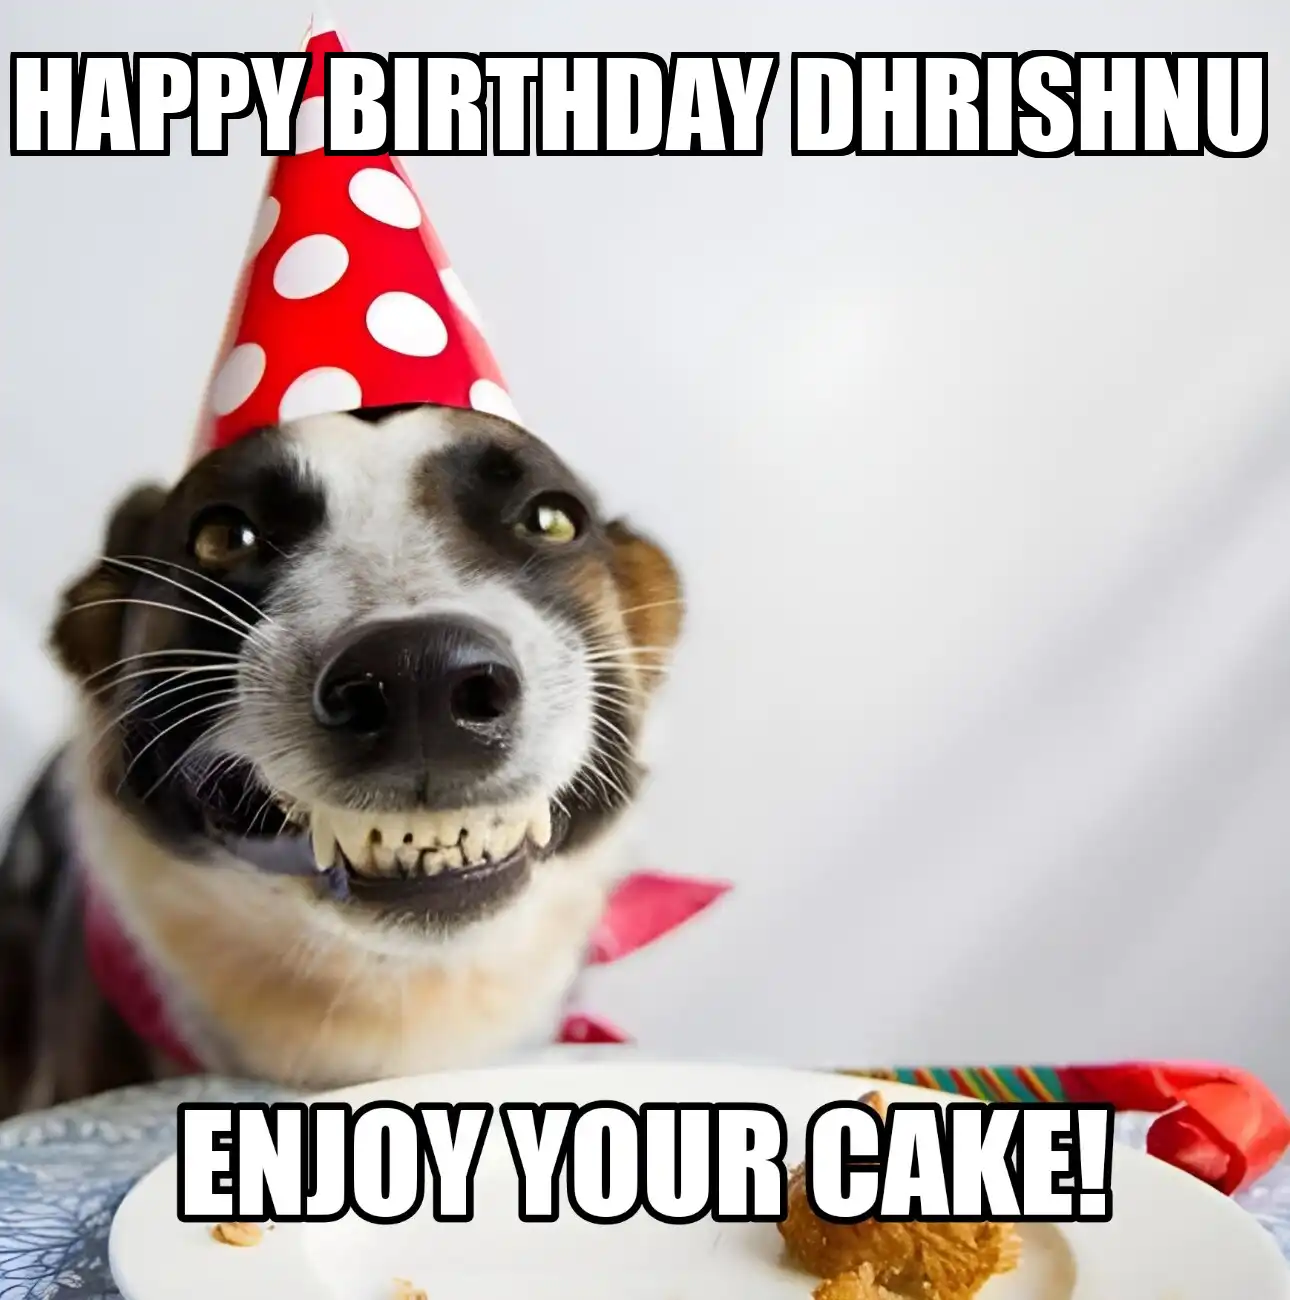 Happy Birthday Dhrishnu Enjoy Your Cake Dog Meme